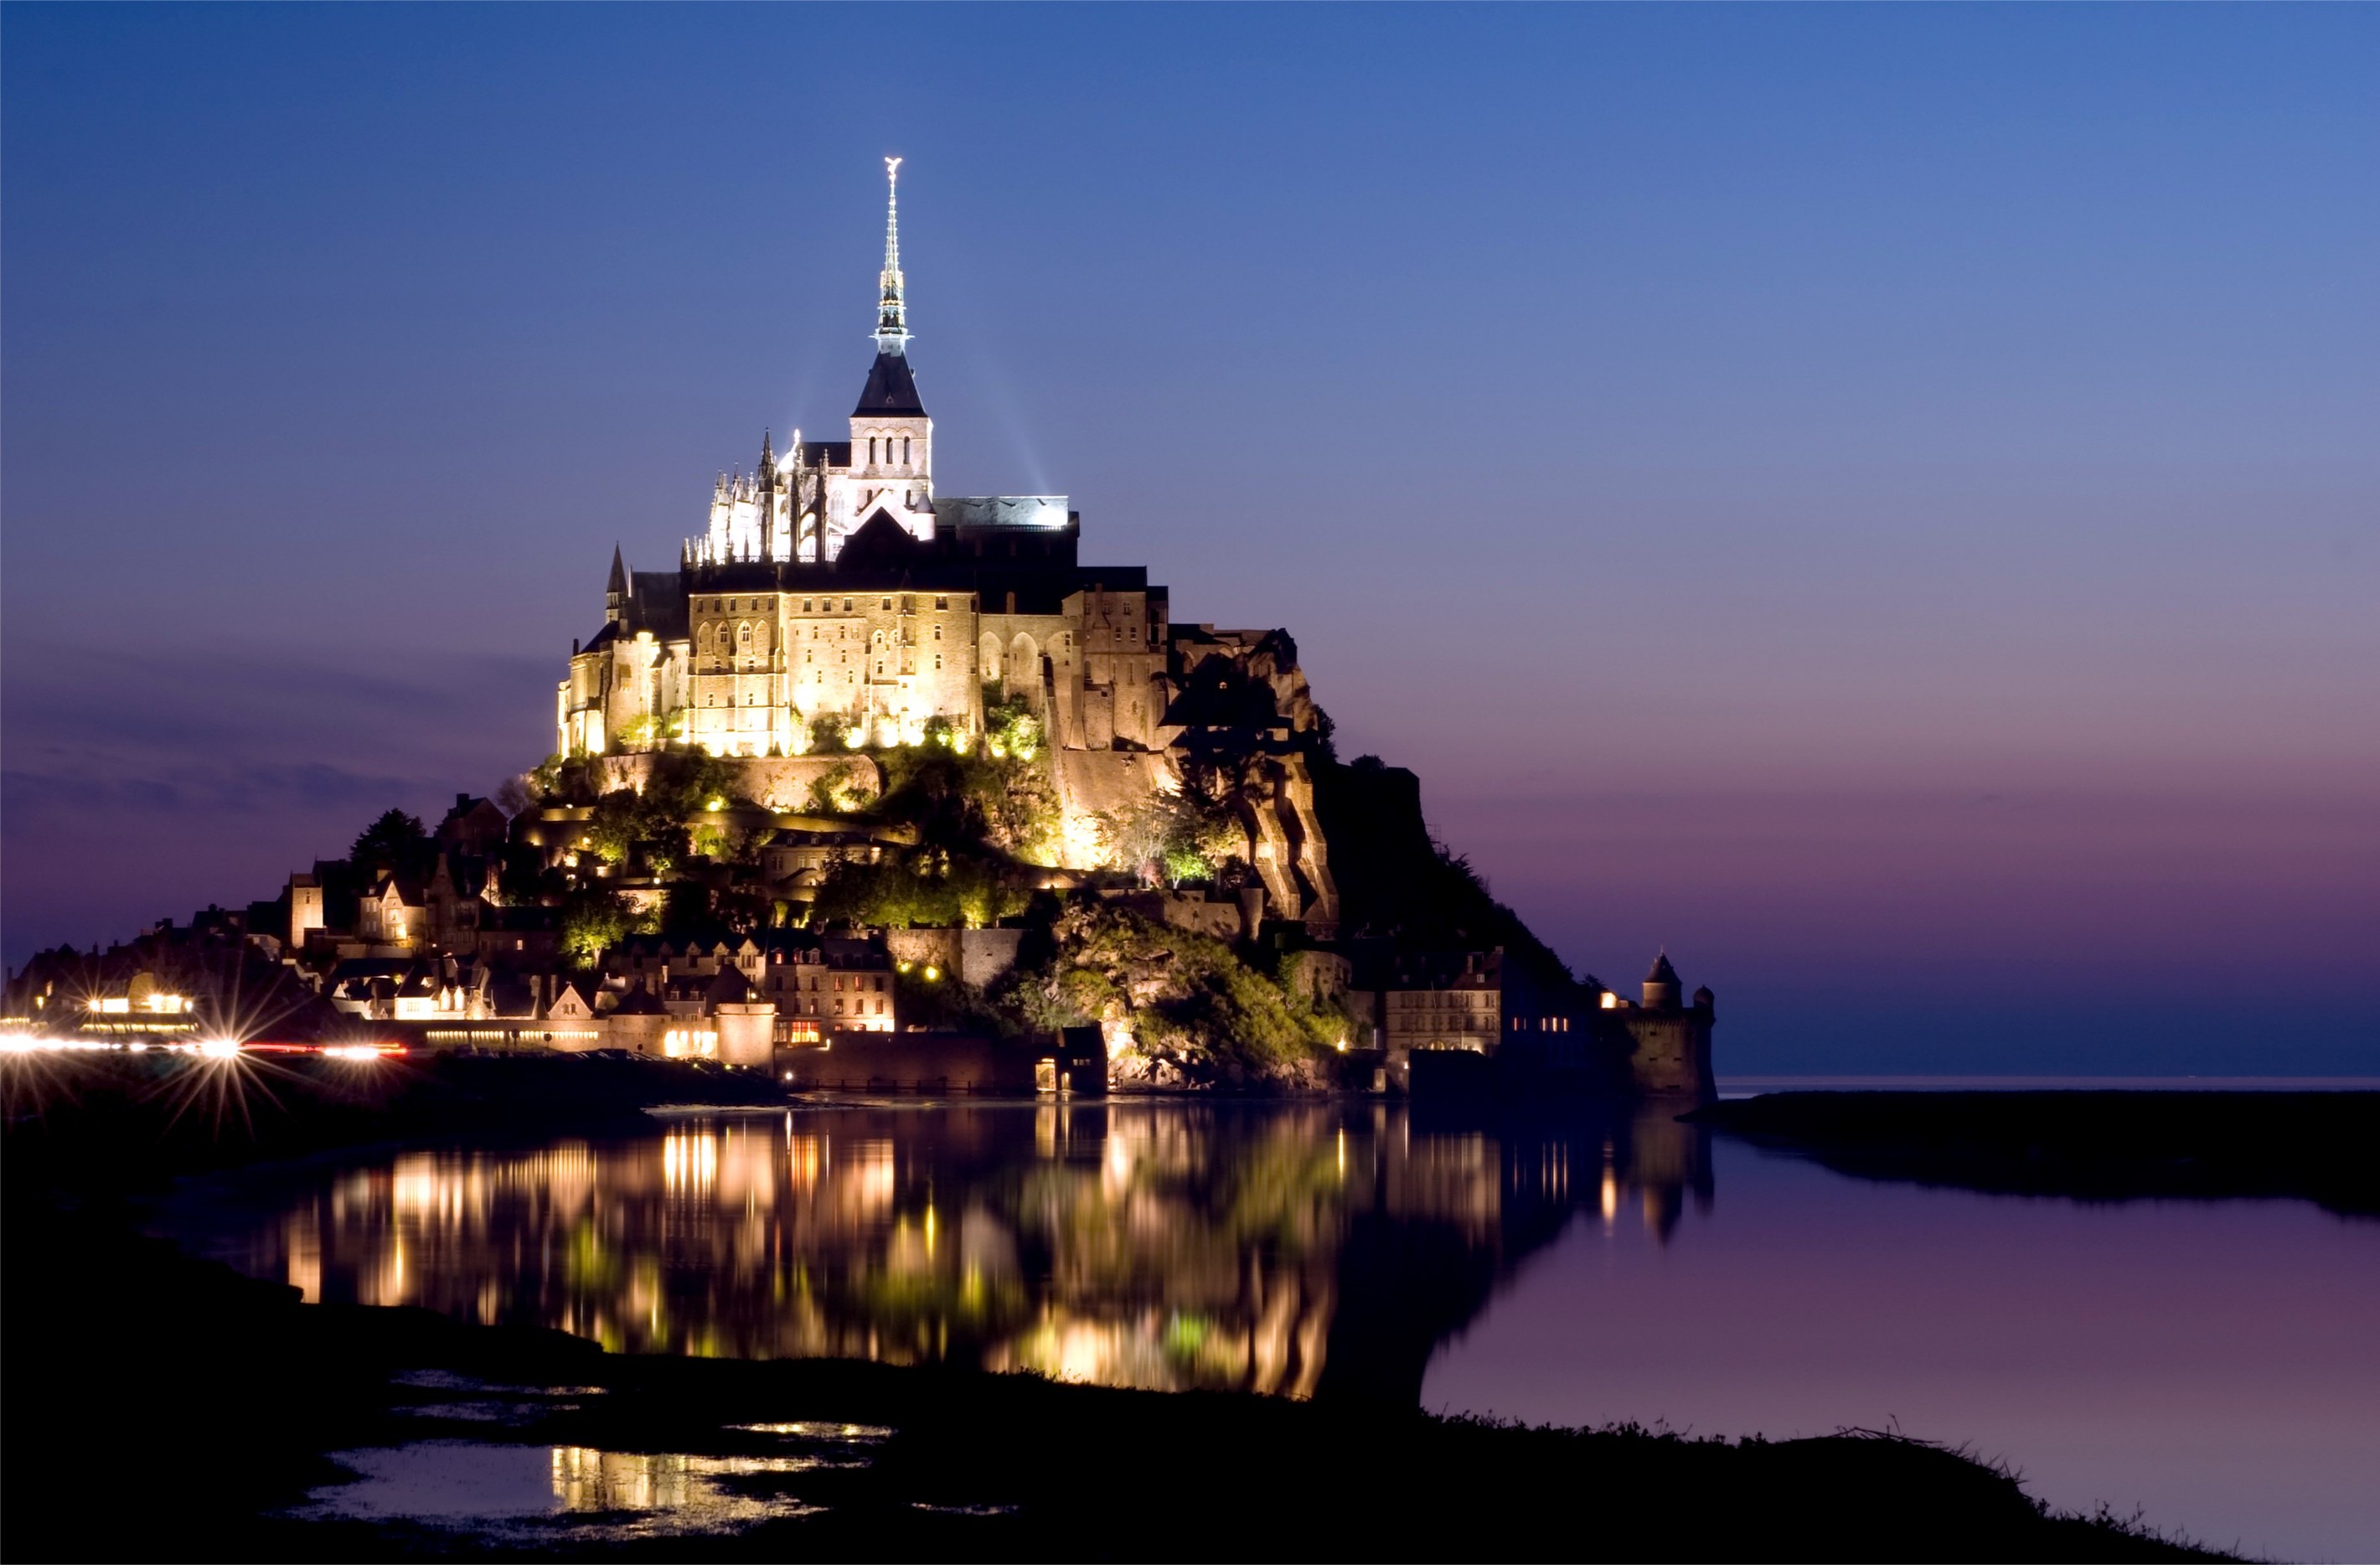 Mont Saint Michel, France, Sky, Church, Castle, House, Rock, Evening, Lights, Sea, Landscape, Nature, City, Sunset Wallpaper